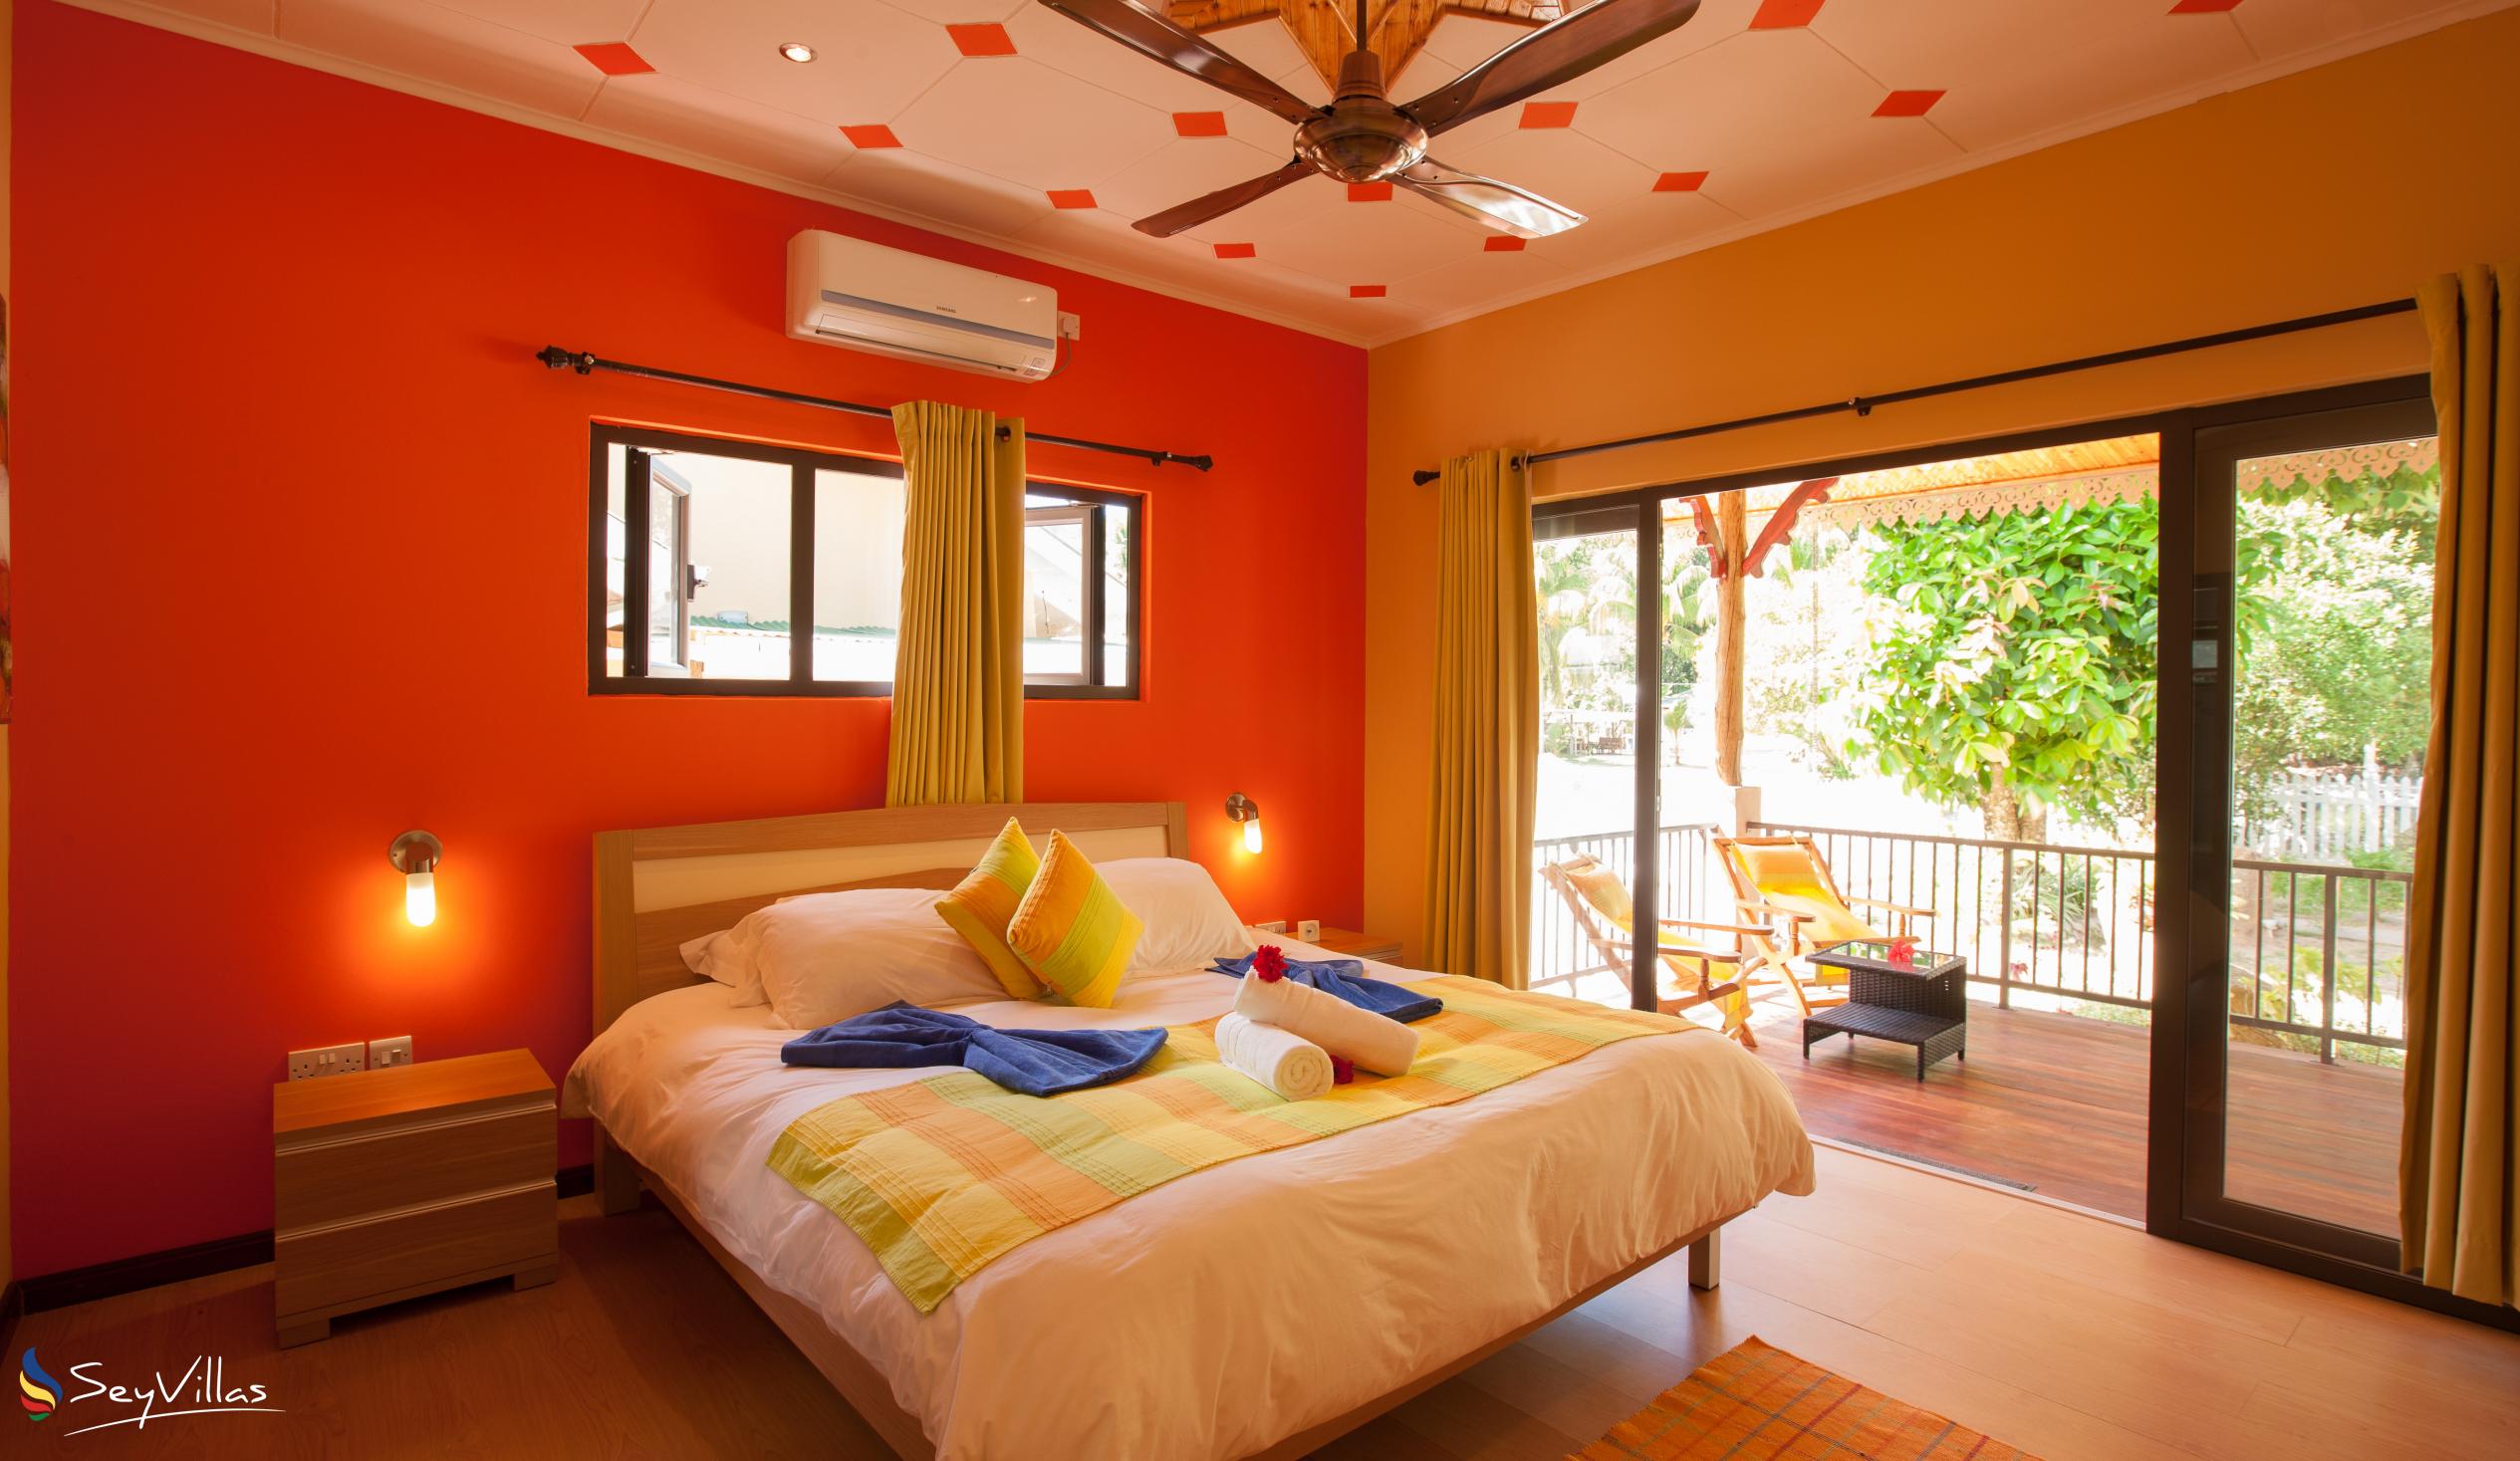 Photo 55: Casa de Leela - 2-Bedroom Bungalow - La Digue (Seychelles)